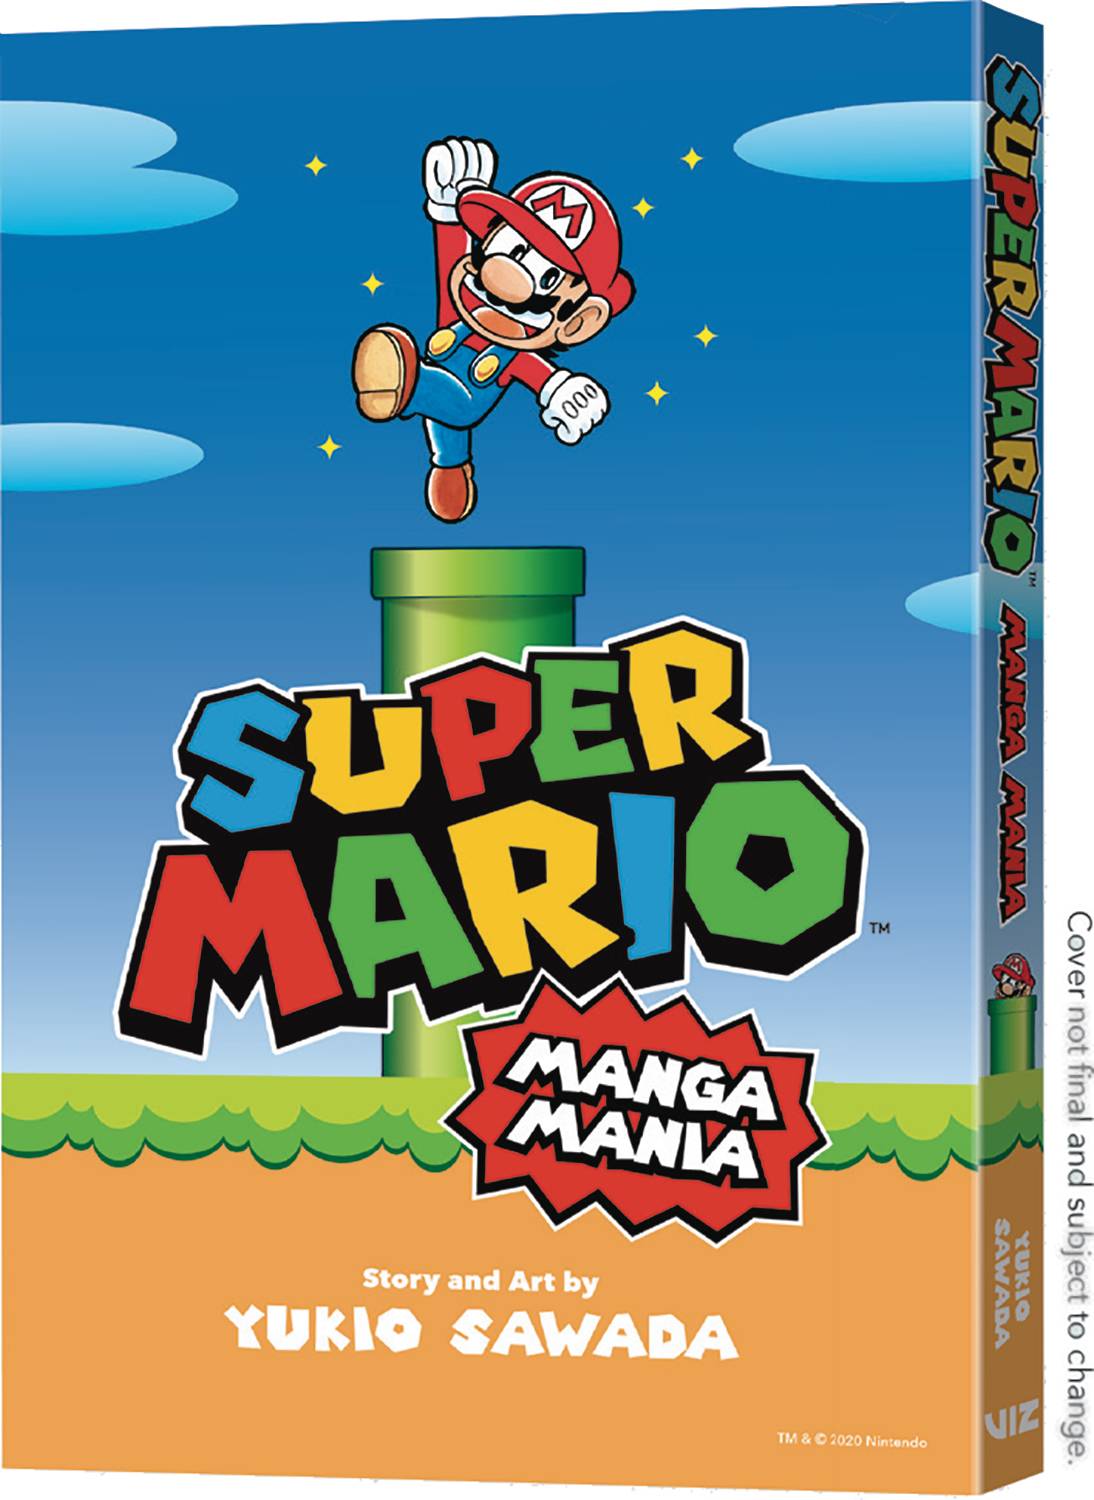 Super Mario Bros Manga Mania Graphic Novel